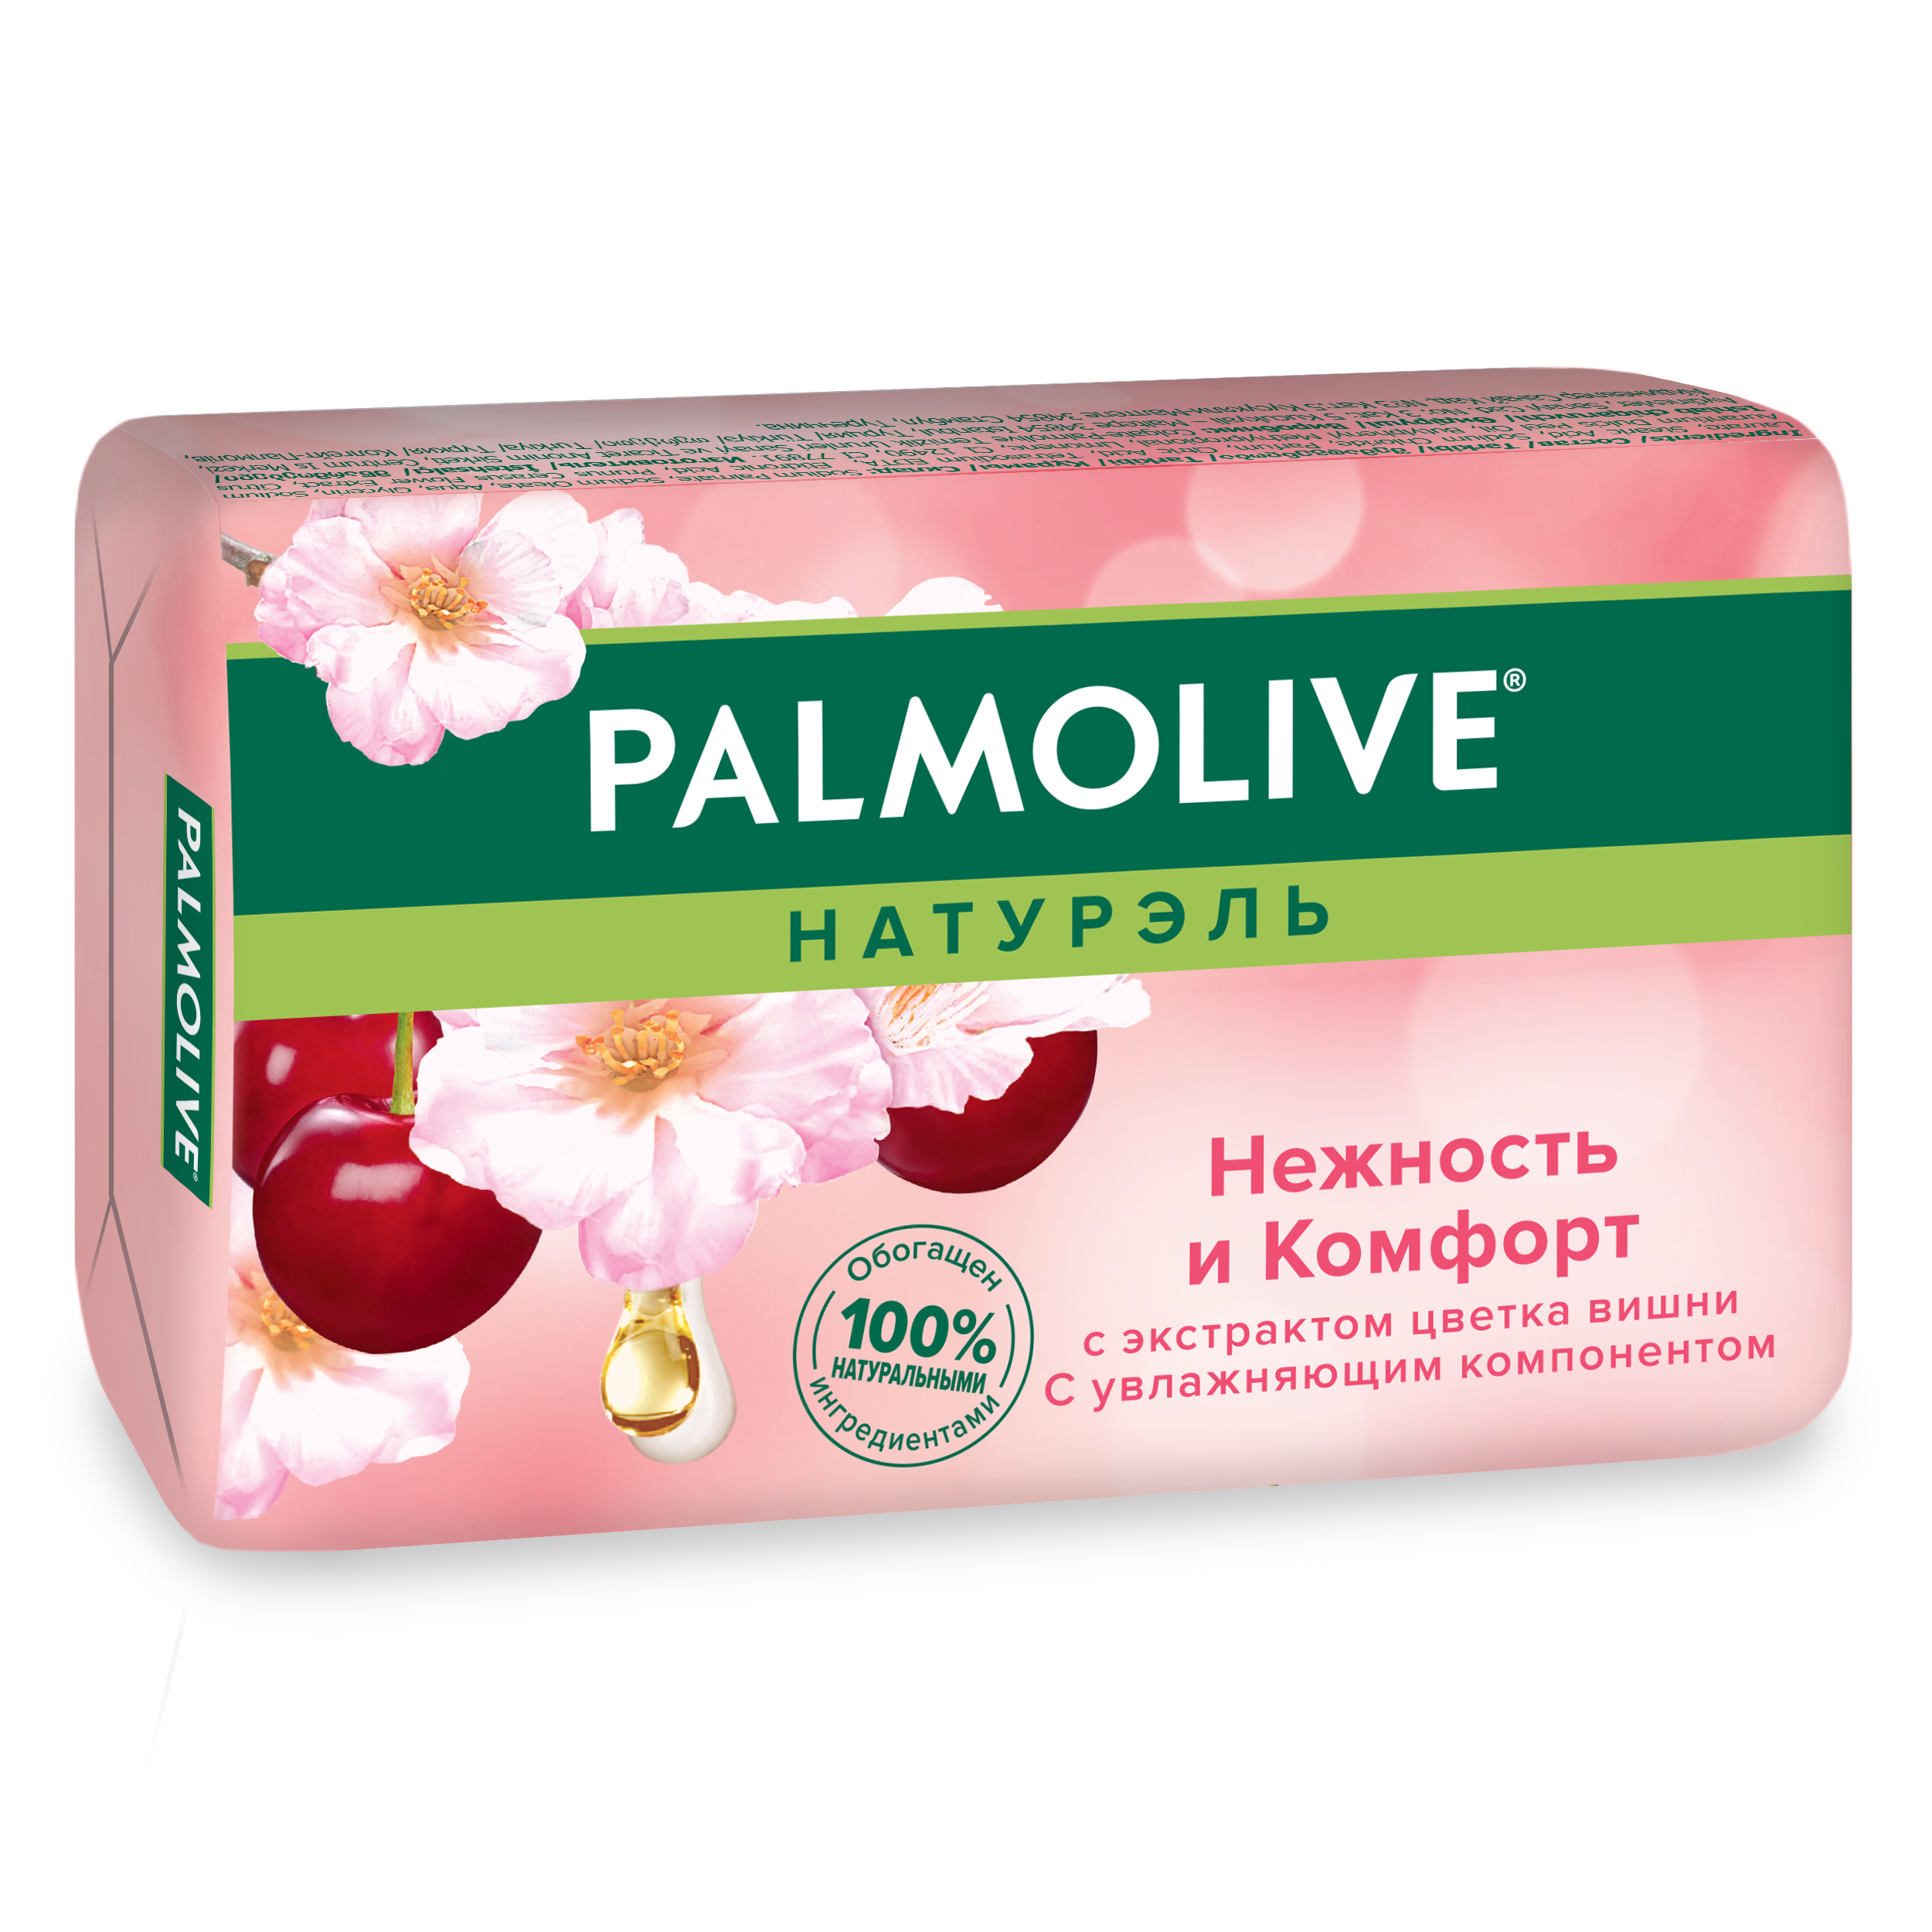 Косметическое мыло Palmolive Натурэль Нежность и комфорт Цветок вишни 90 г косметическое мыло palmolive натурэль интенсивное увлажнение с экстрактом оливы 4x90 г